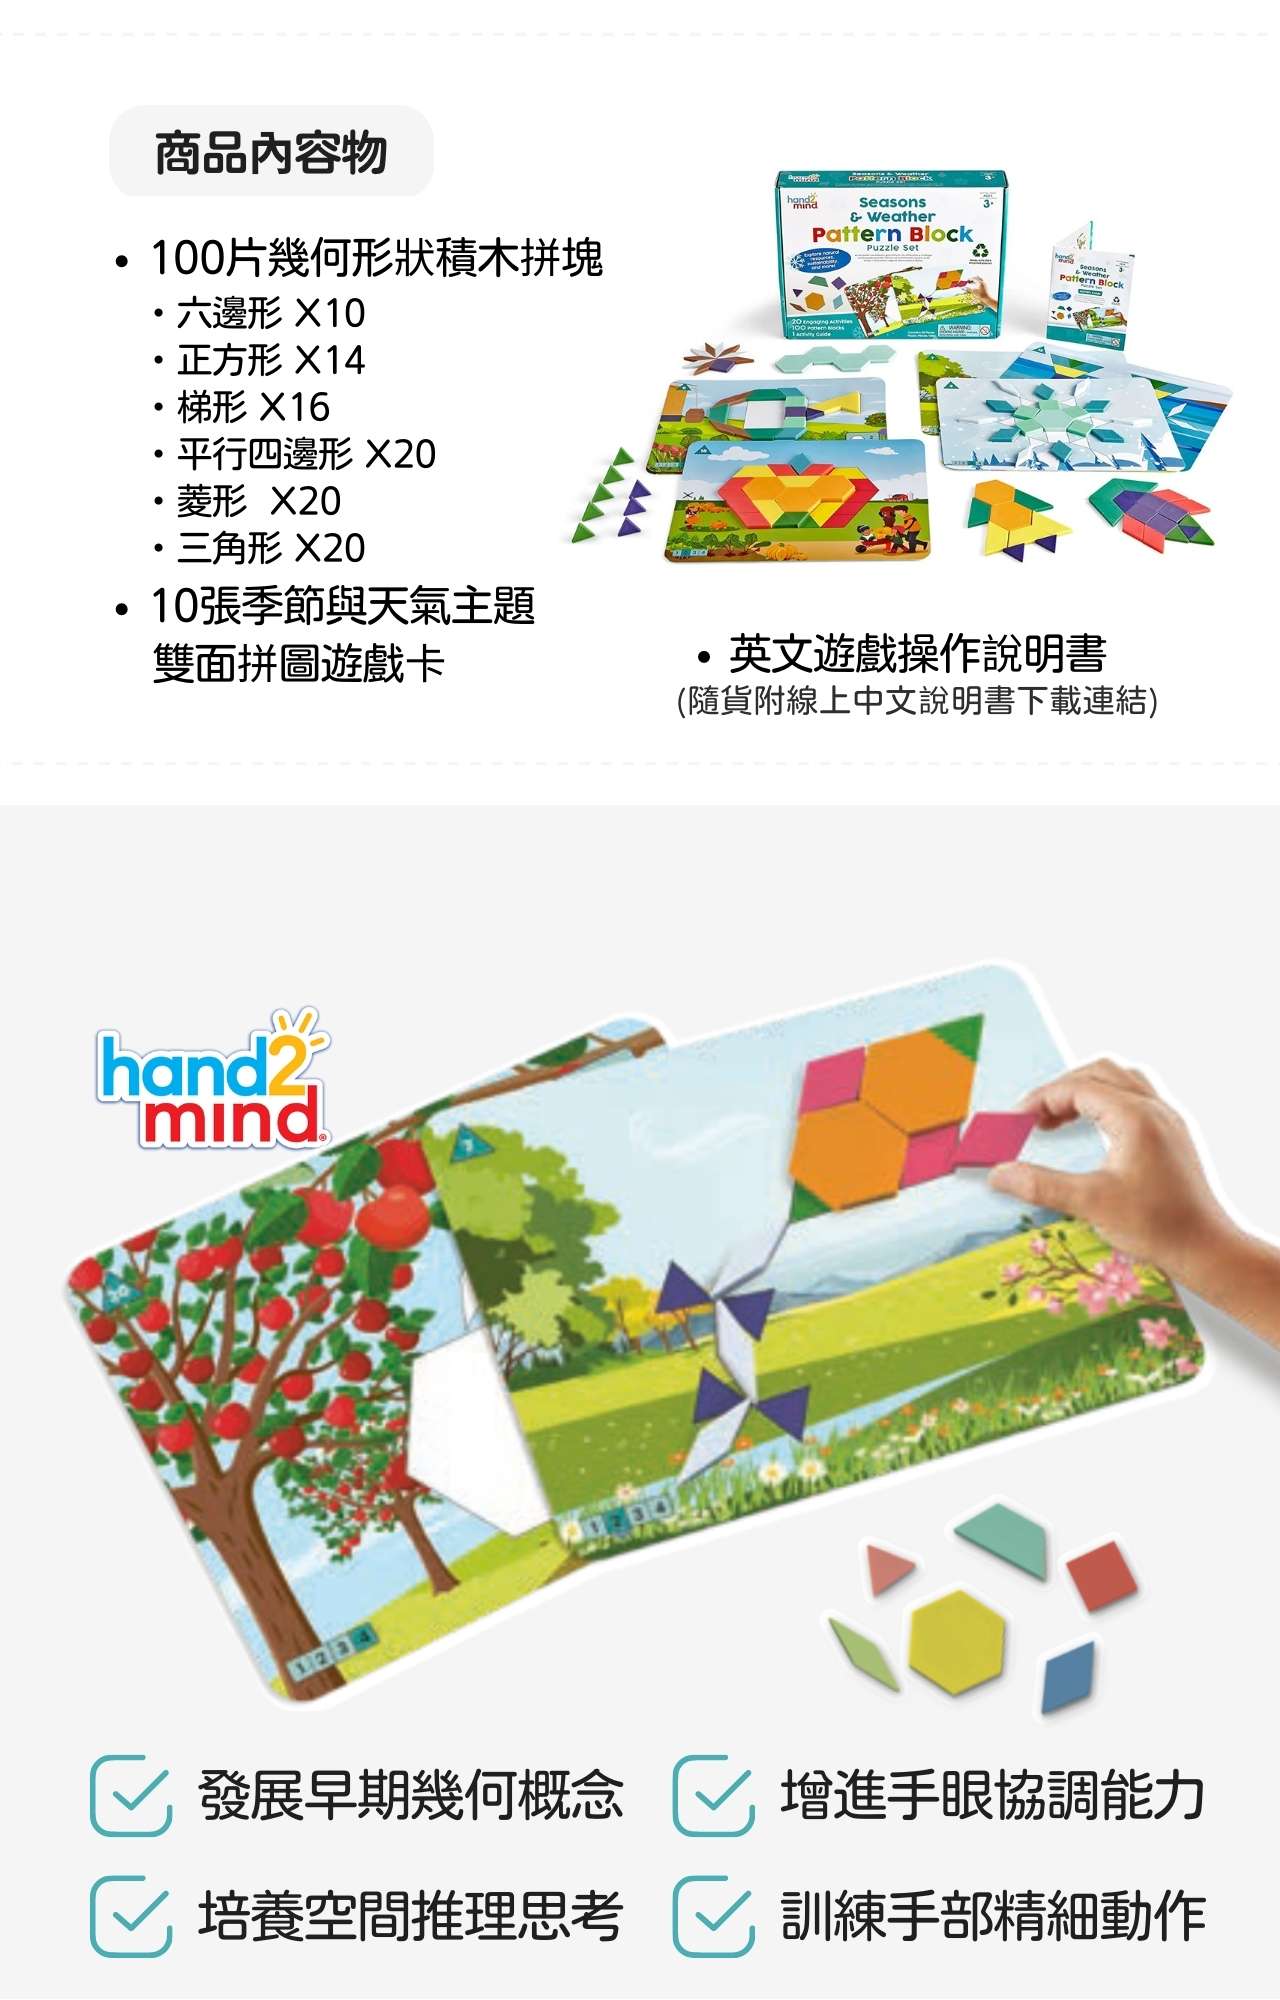 美國hand2mind創意幾何拼圖遊戲組-季節與天氣主題款_產品說明 (2)